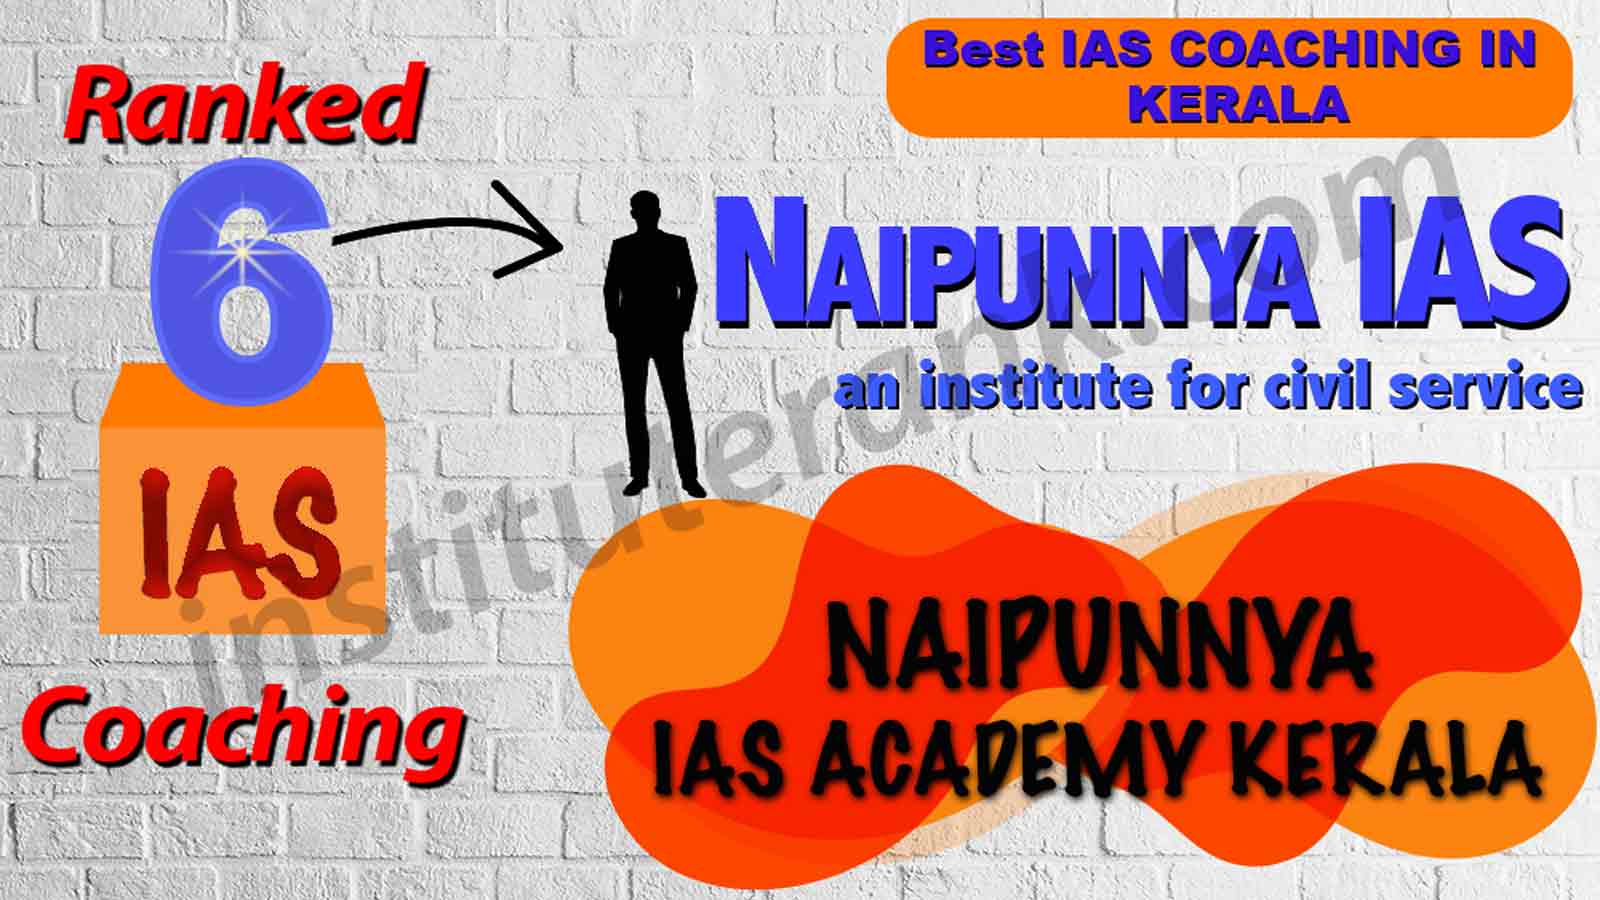 Best IAS Coaching of Kerala